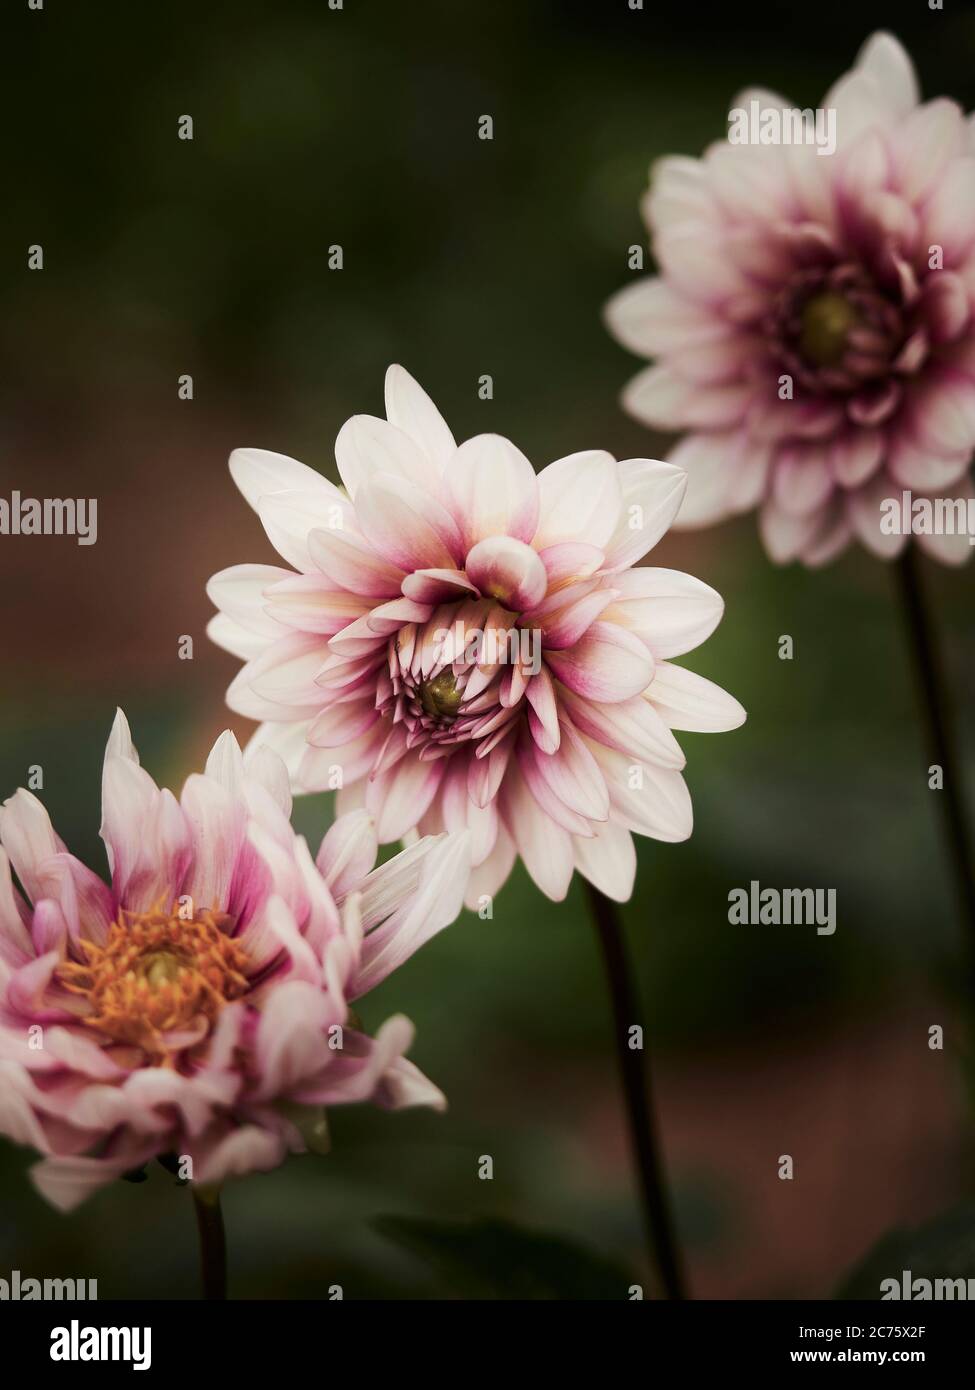 Dahlia pinnata oder Garten Dahila in rosa bis lila Farbe sind Mitglieder der Asteraceae Familie der blühenden Pflanzen in Hausgärten gefunden. Stockfoto